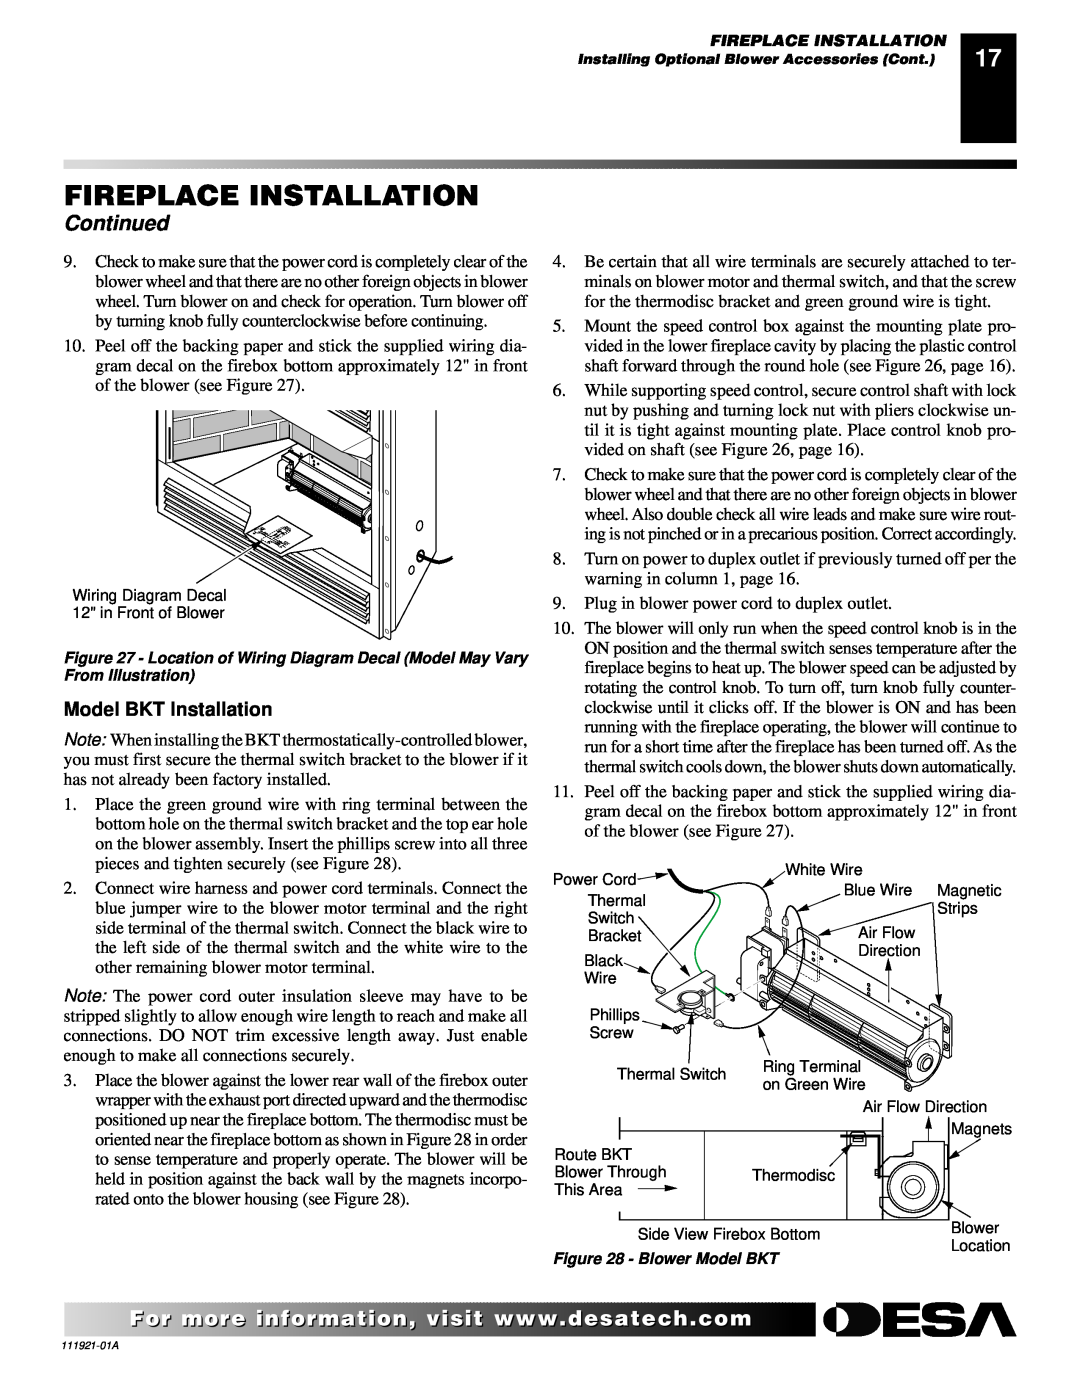 Desa (V)K42N installation manual Fireplace Installation, Continued, Model BKT Installation 